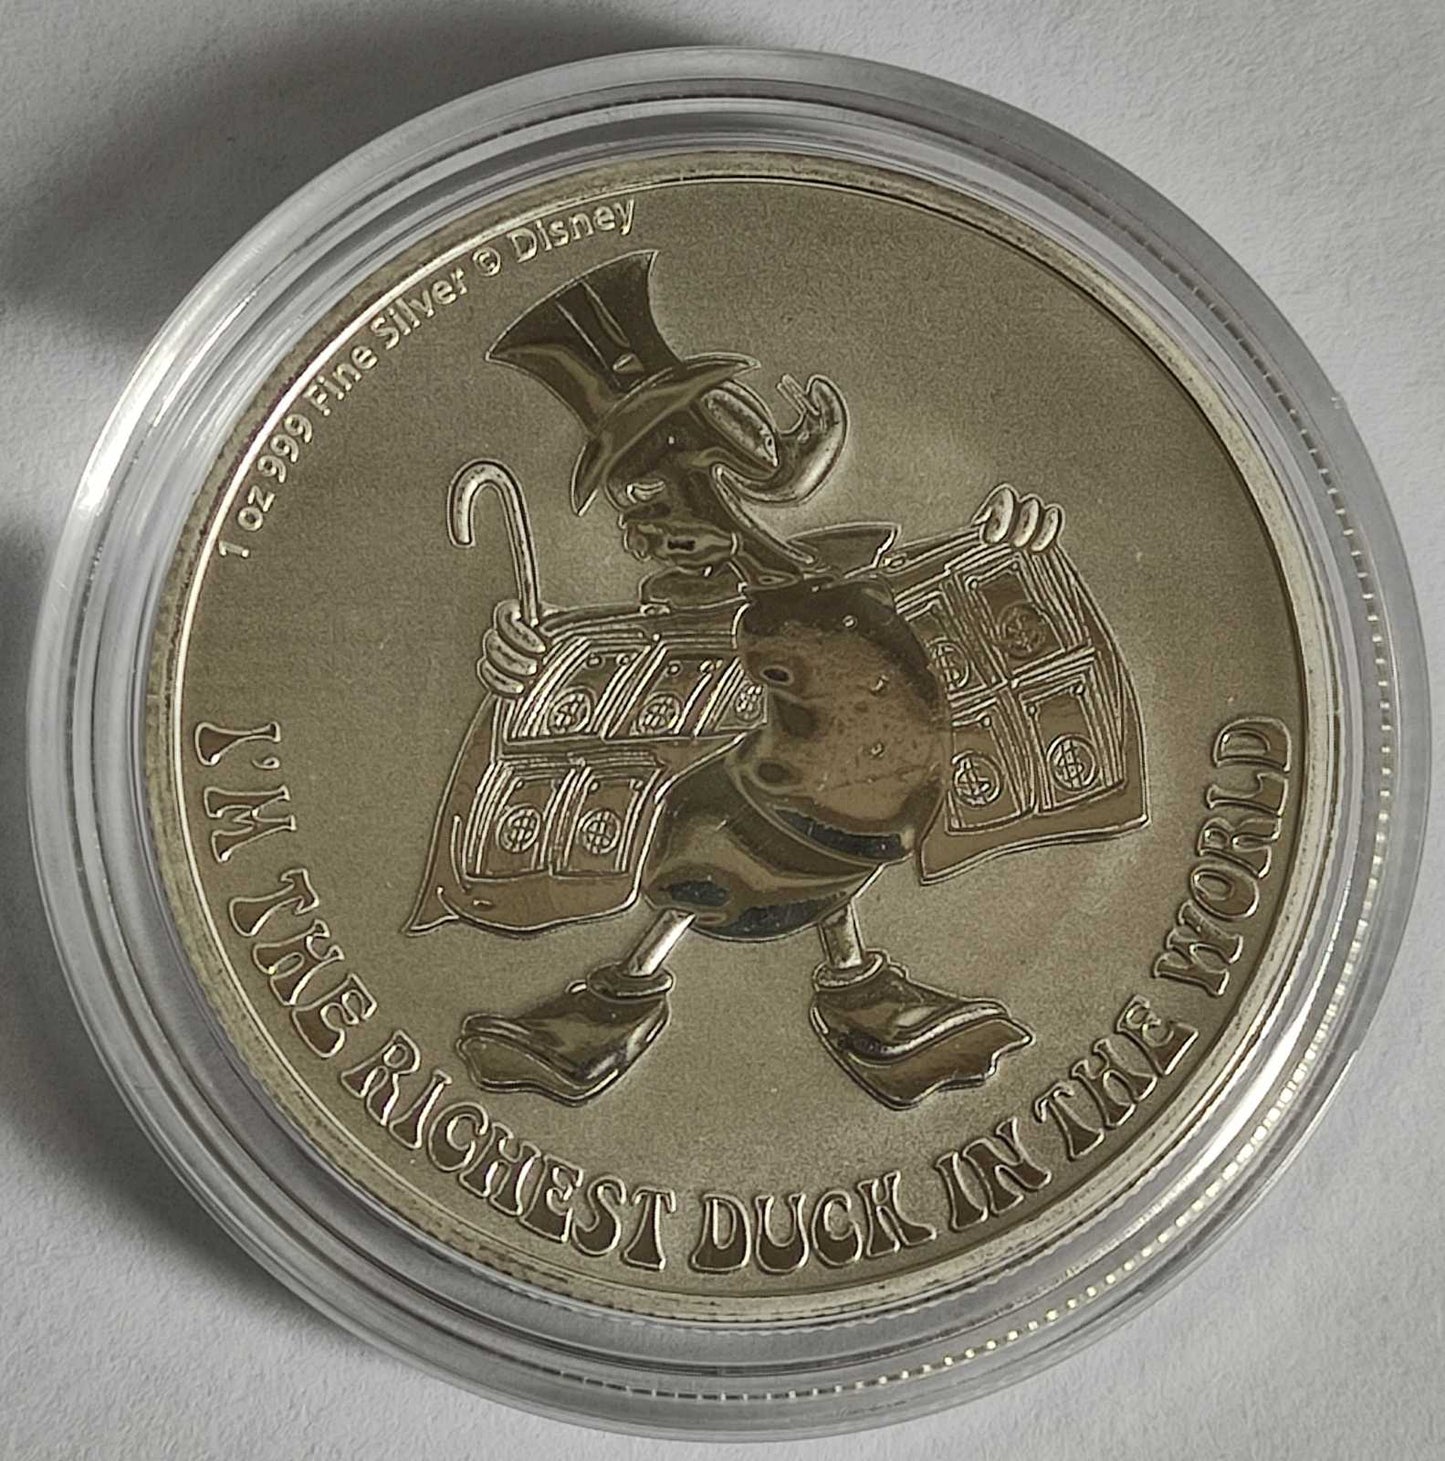 2022 Niue Disney's Scrooge McDuck 1 oz Silver Coin BU in Capsule